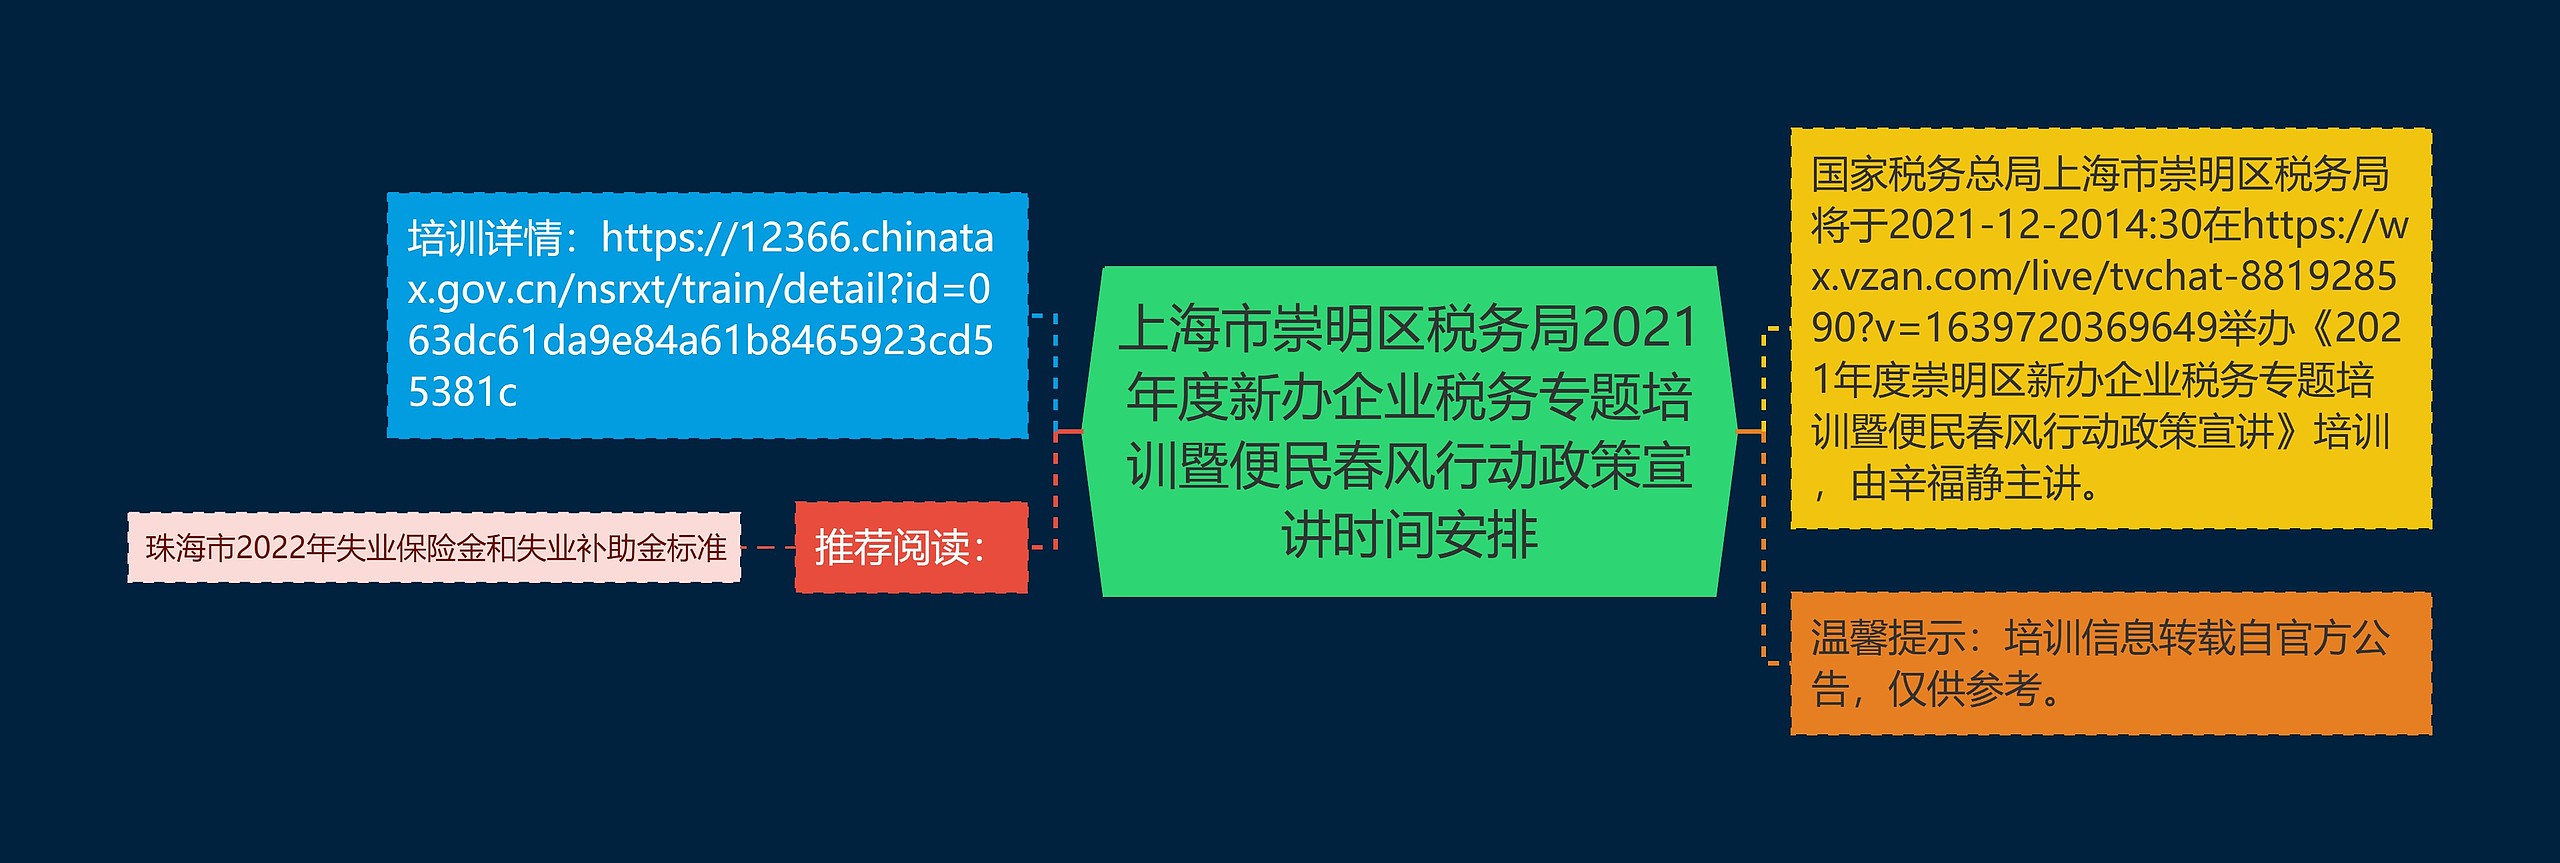 上海市崇明区税务局2021年度新办企业税务专题培训暨便民春风行动政策宣讲时间安排思维导图